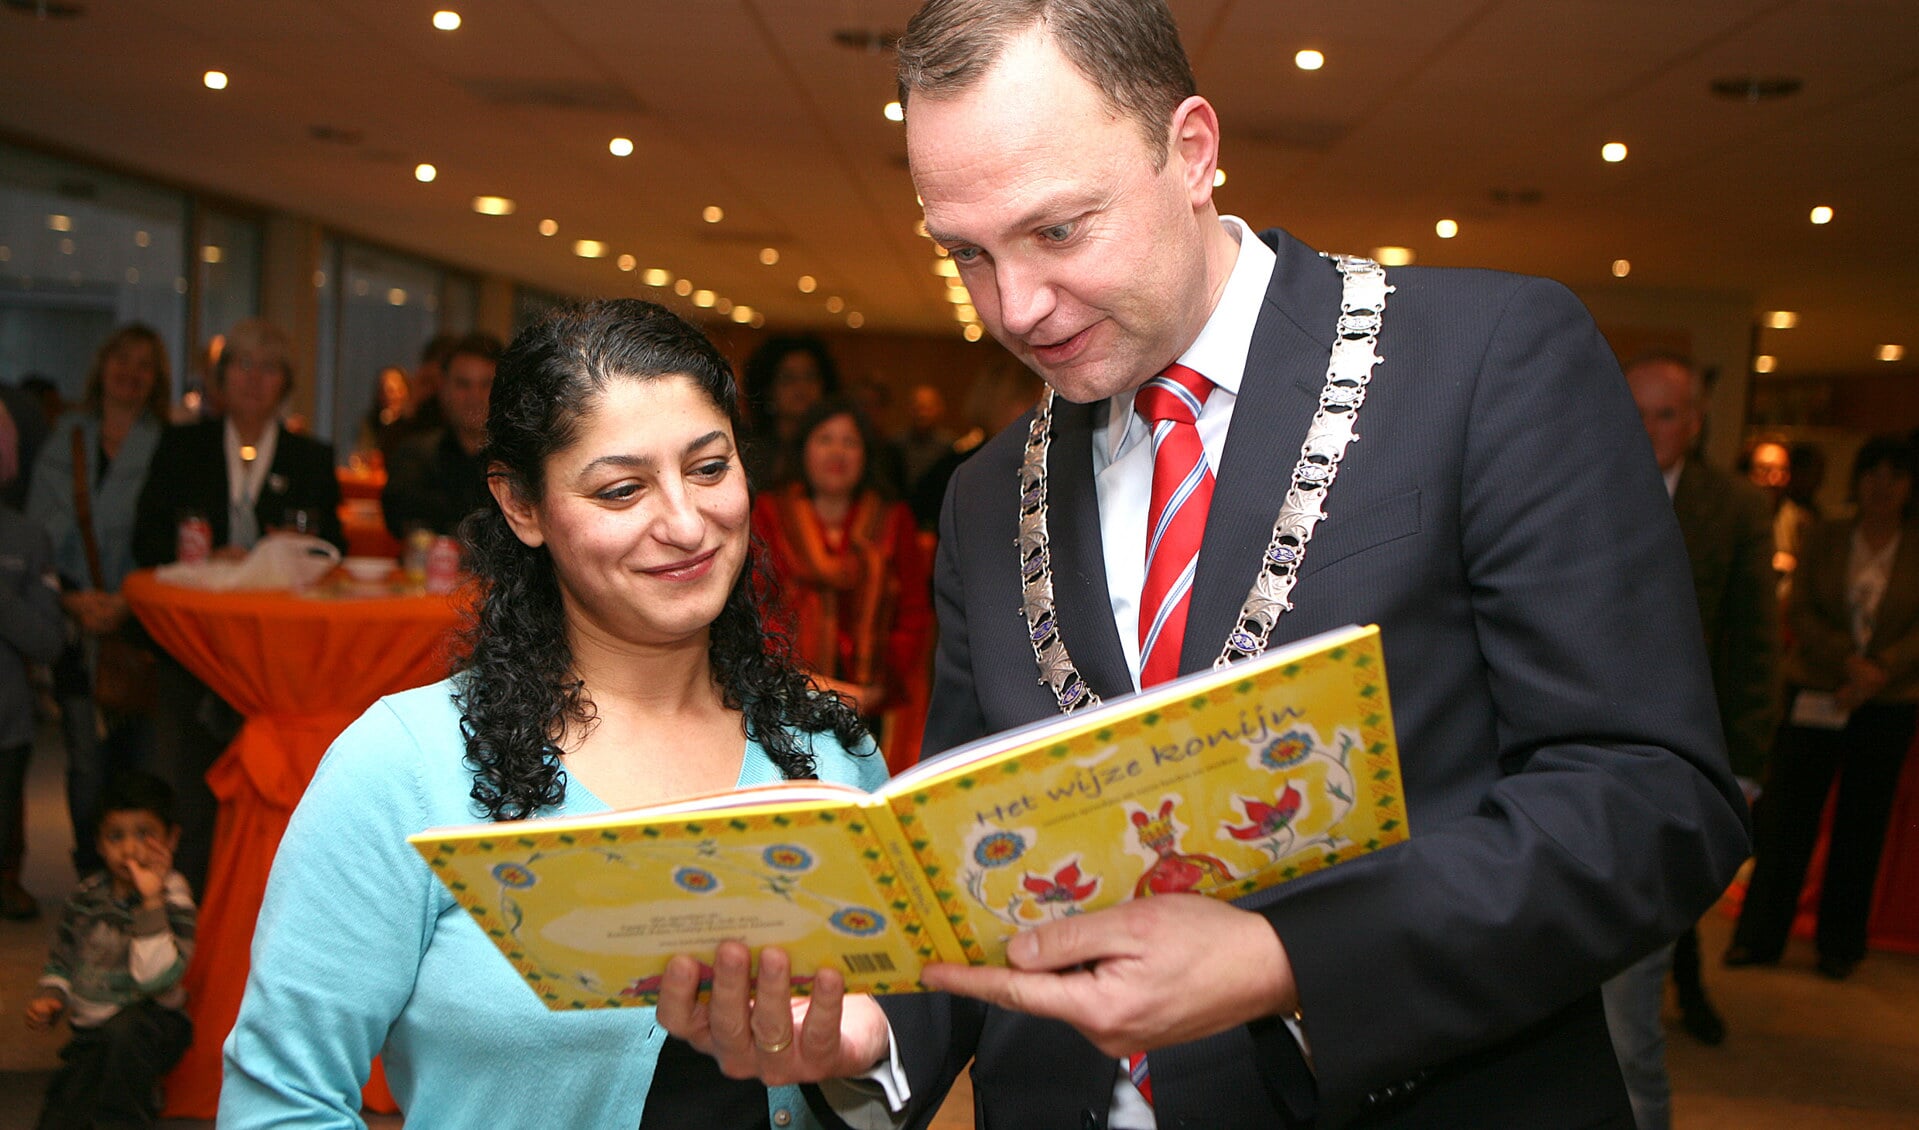 De burgemeester bekijkt het eerste boek